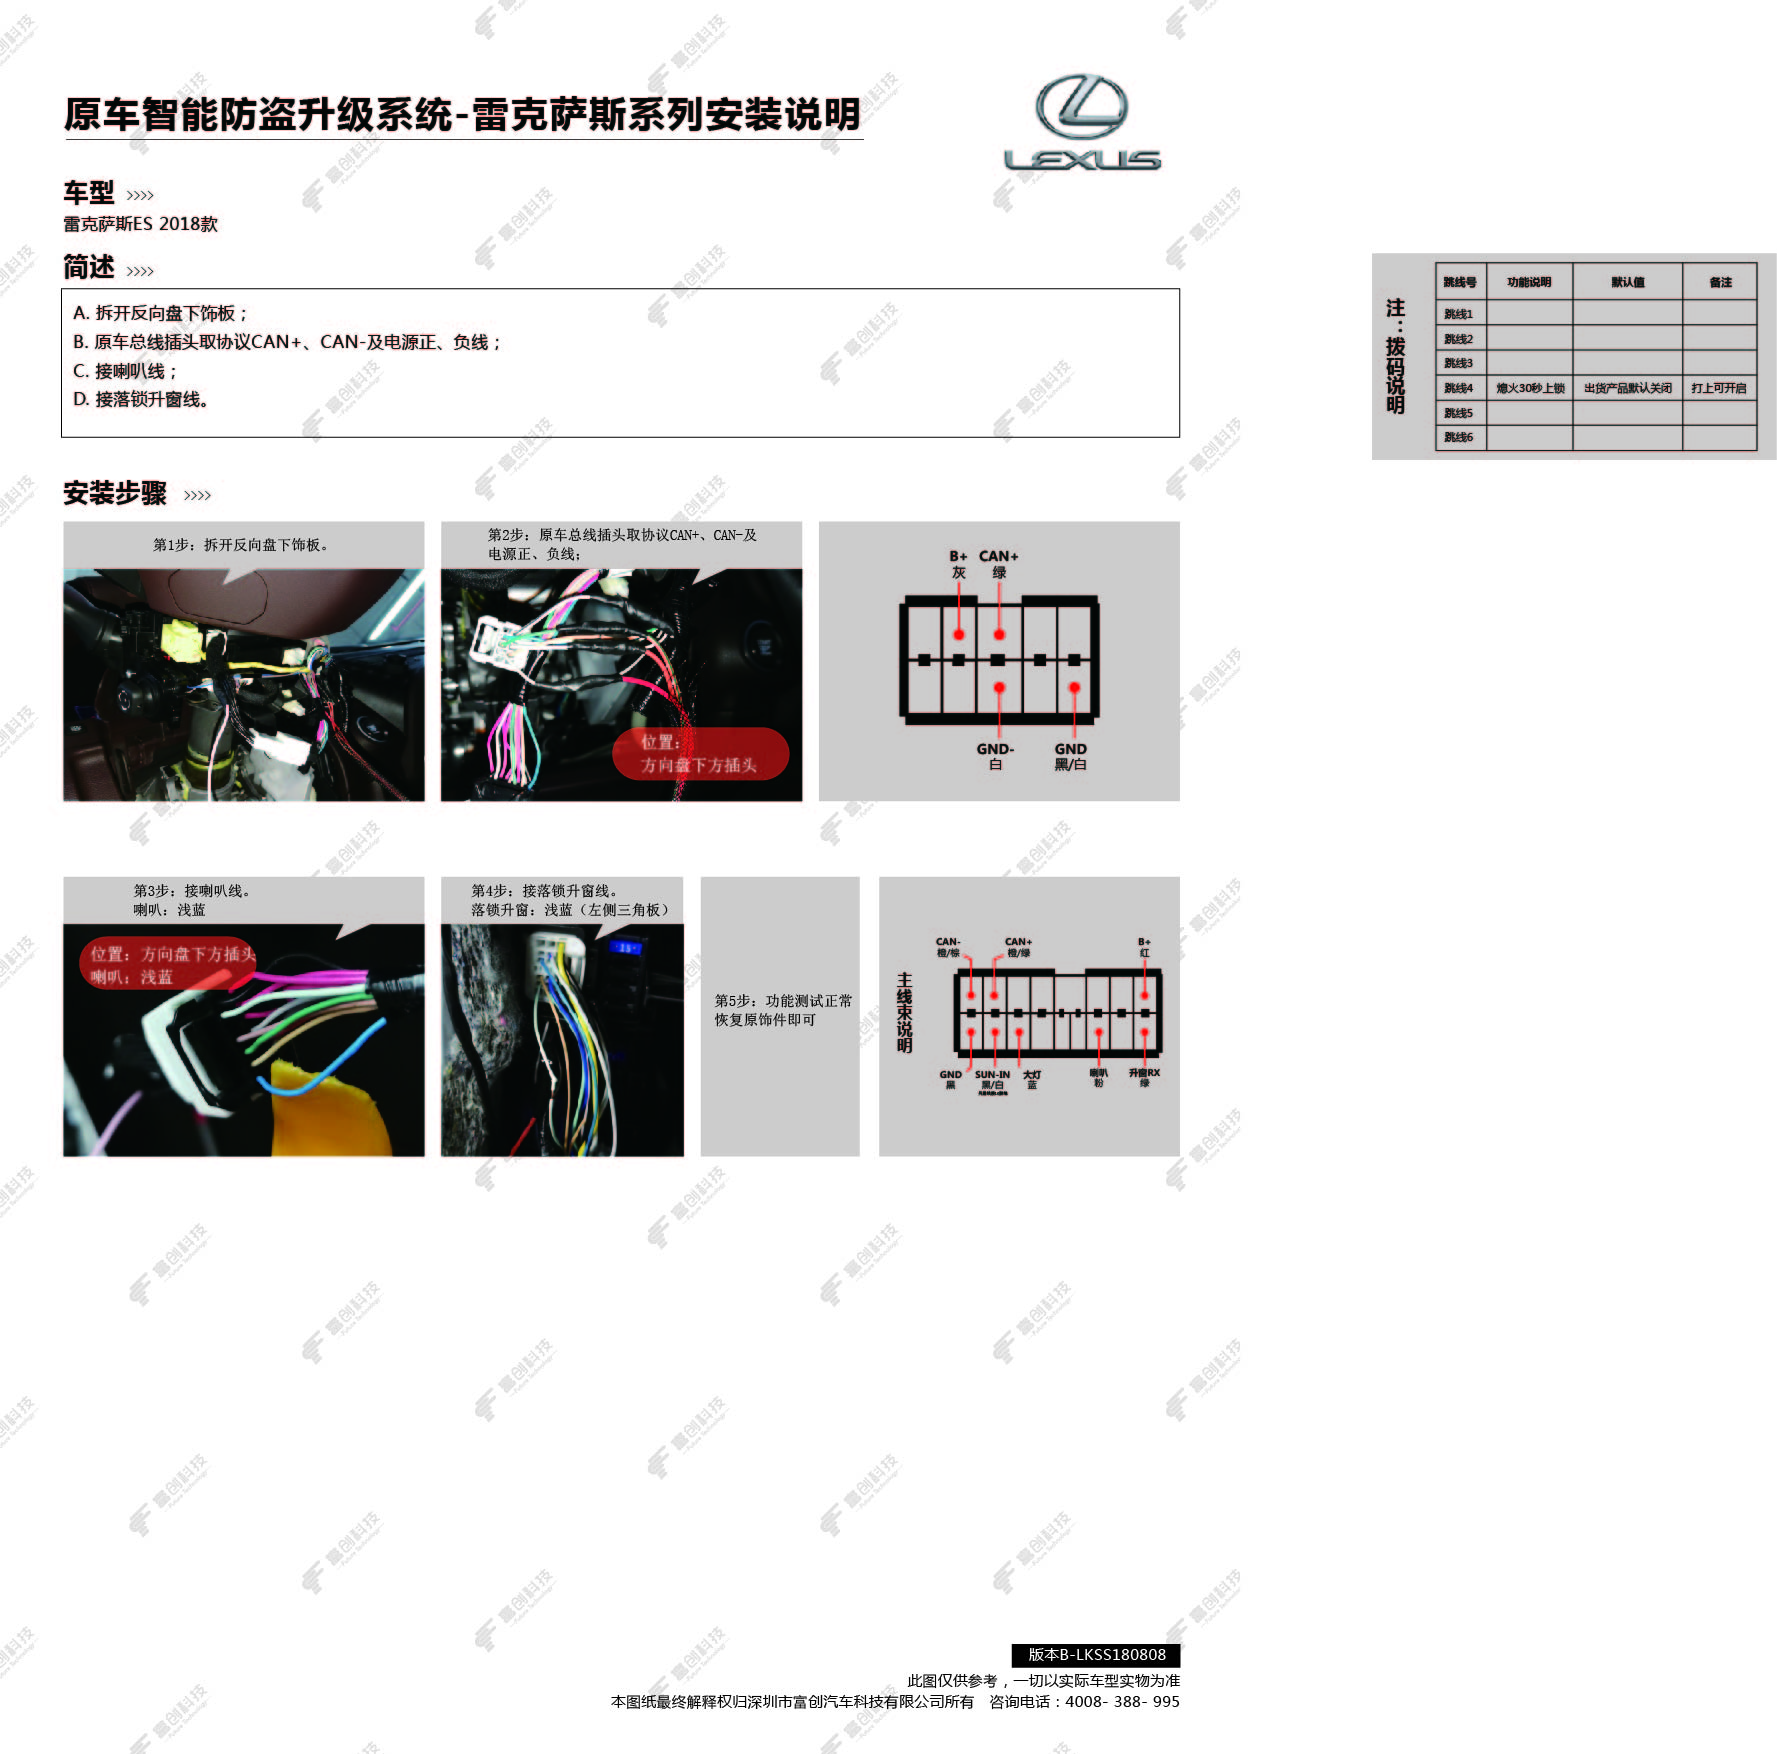 原车智能防盗升级系统-雷克萨斯系列安装说明(版本B-LKSS180808 ).jpg